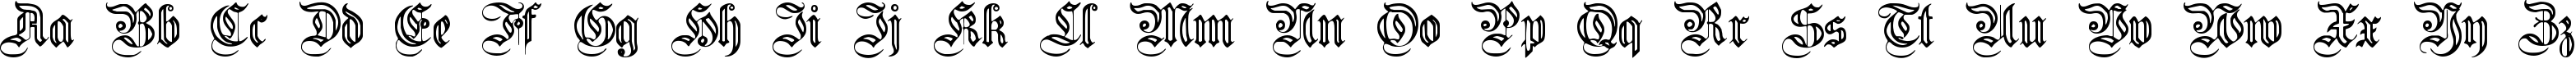 Пример написания английского алфавита шрифтом FlutedGermanica